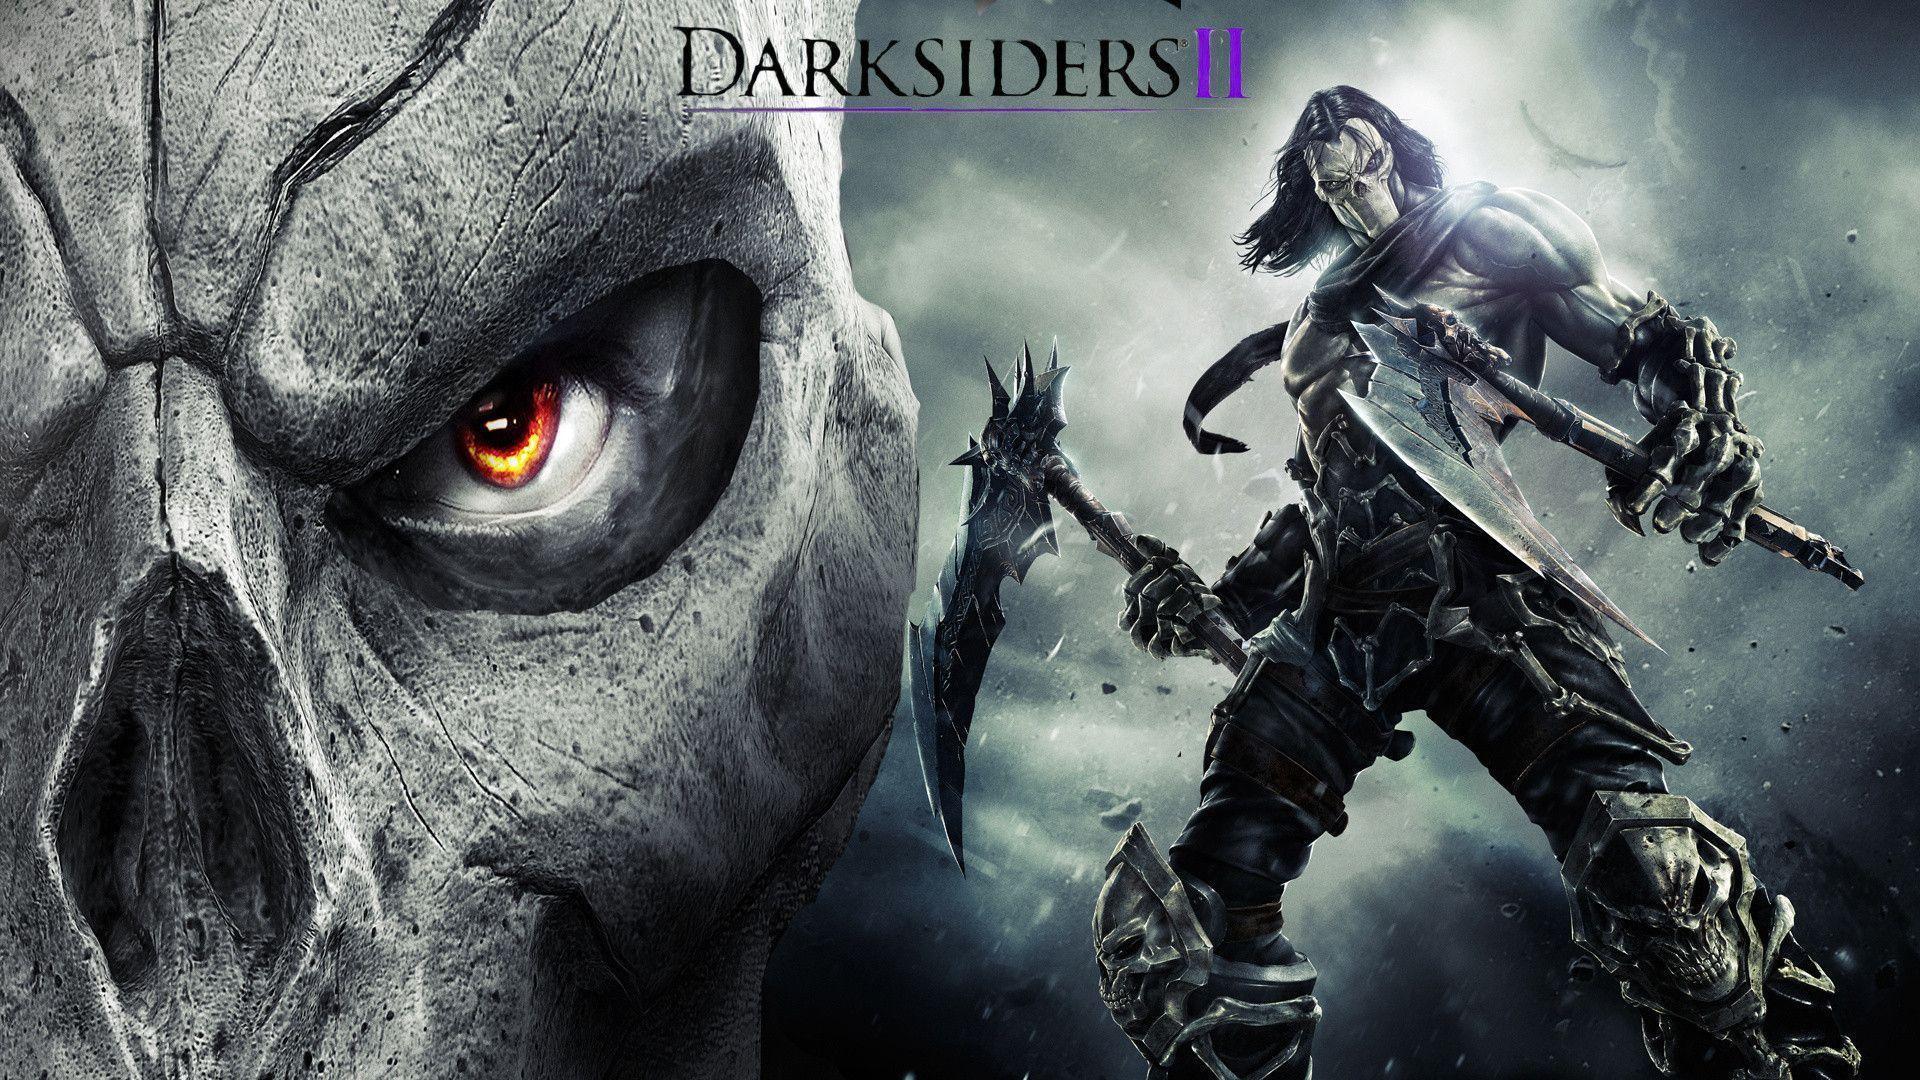 Darksiders II Wallpaper. Darksiders II Background